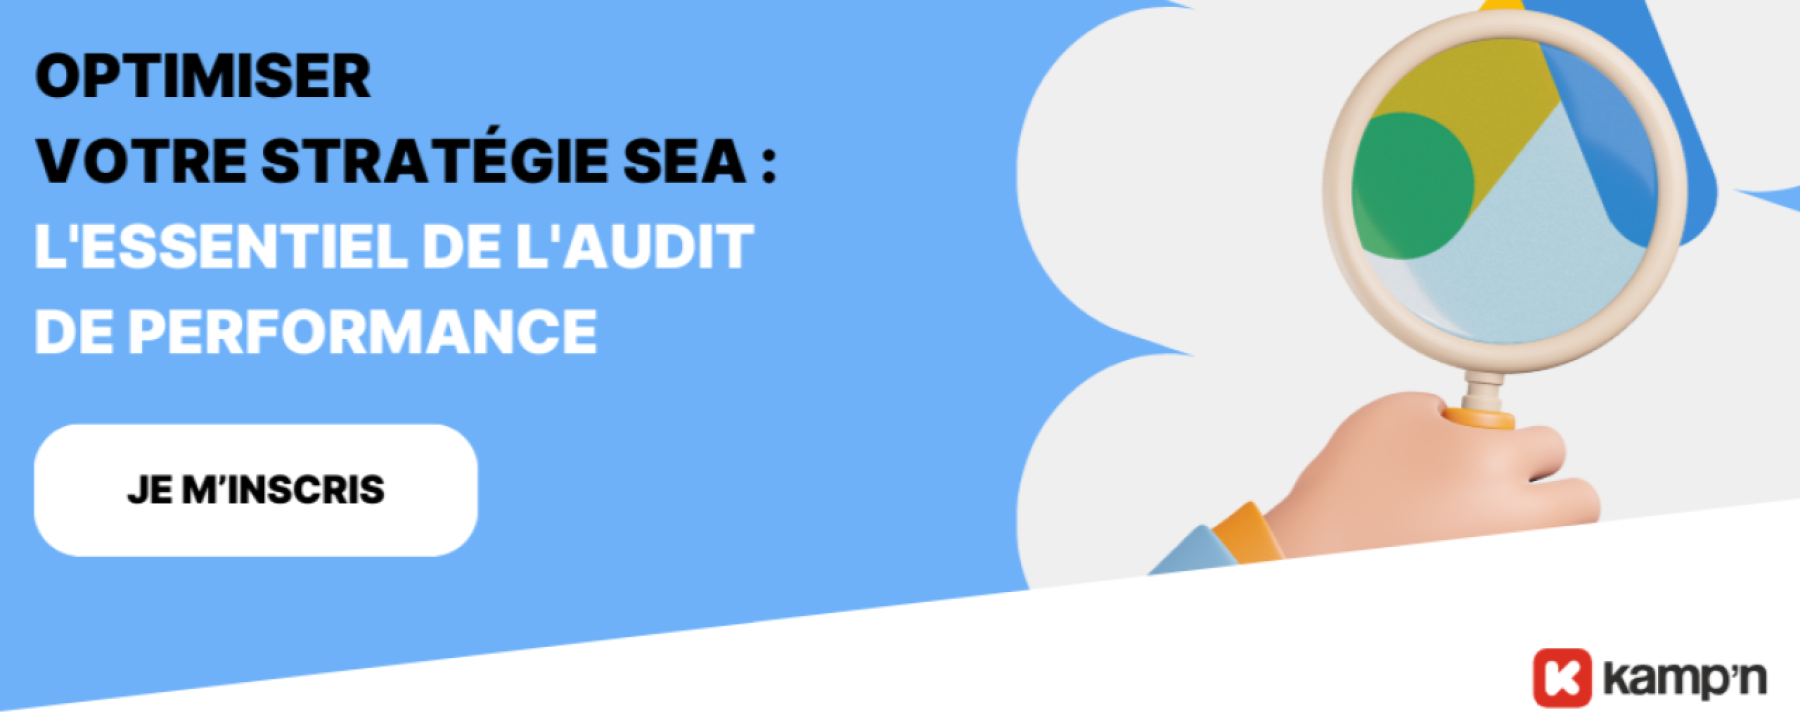 Optimiser votre stratégie SEA : l'essentiel de l'audit de performance